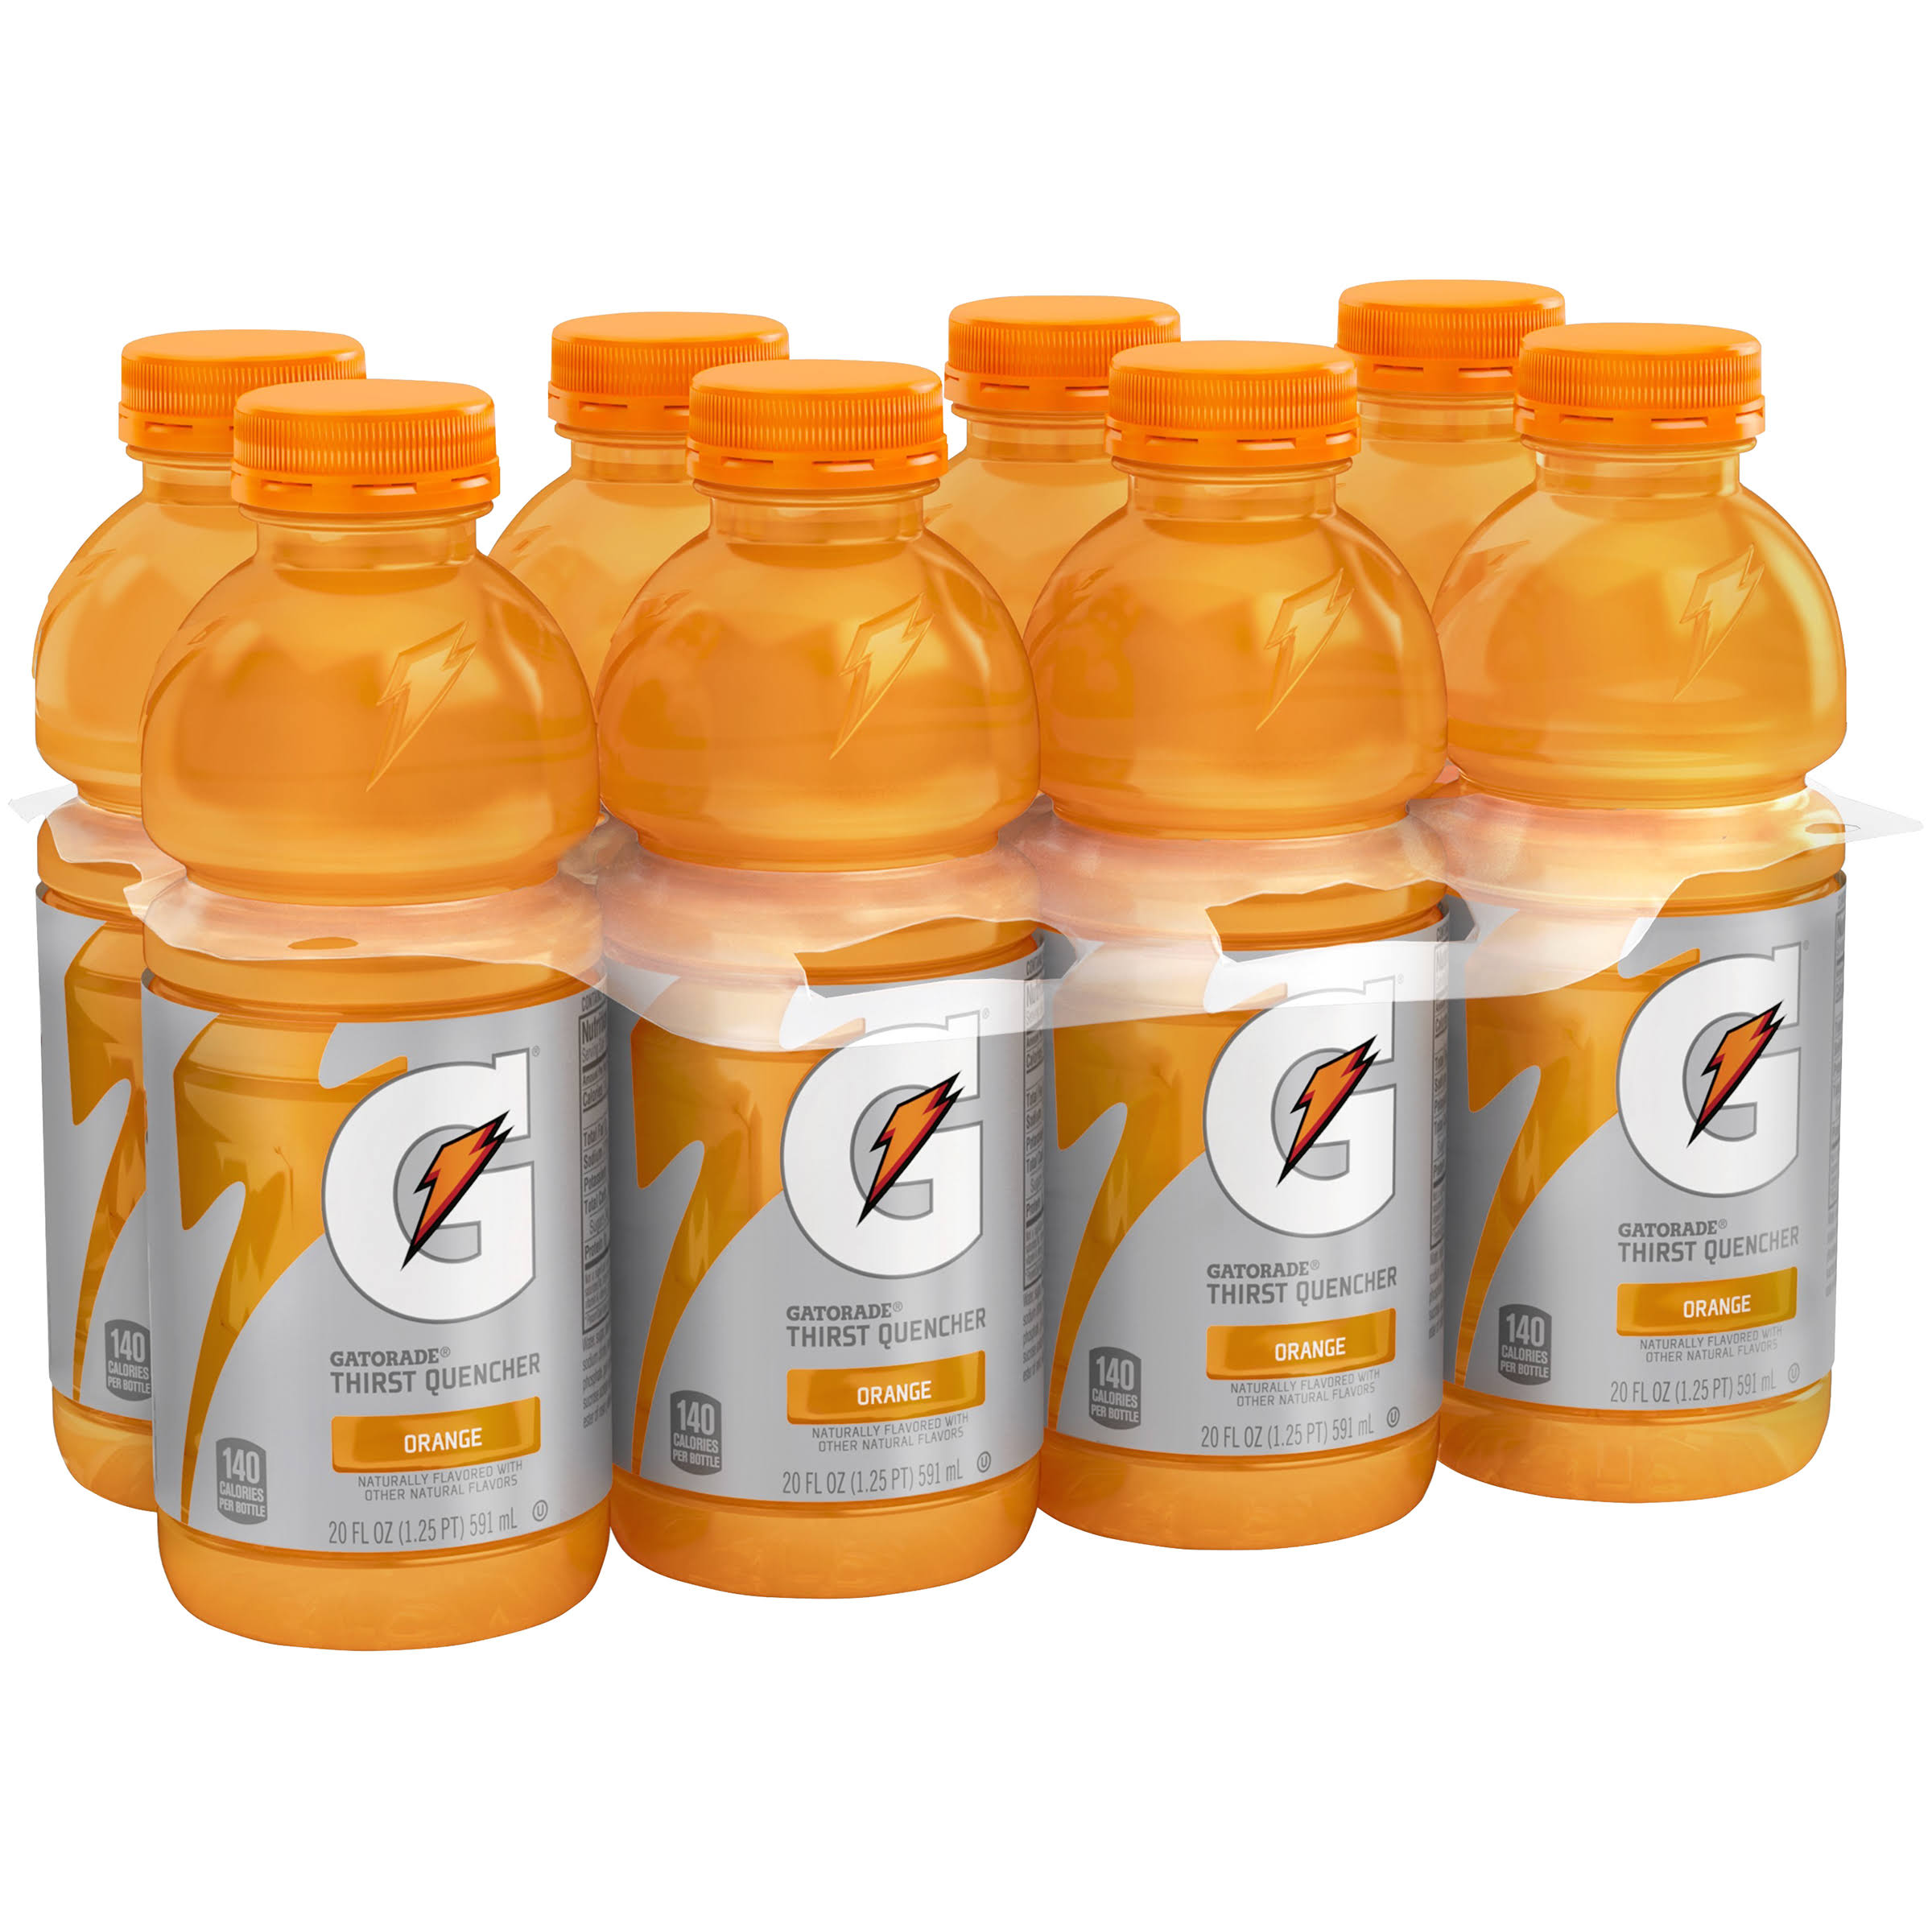 Gatorade Thirst Quencher - Orange, 20oz